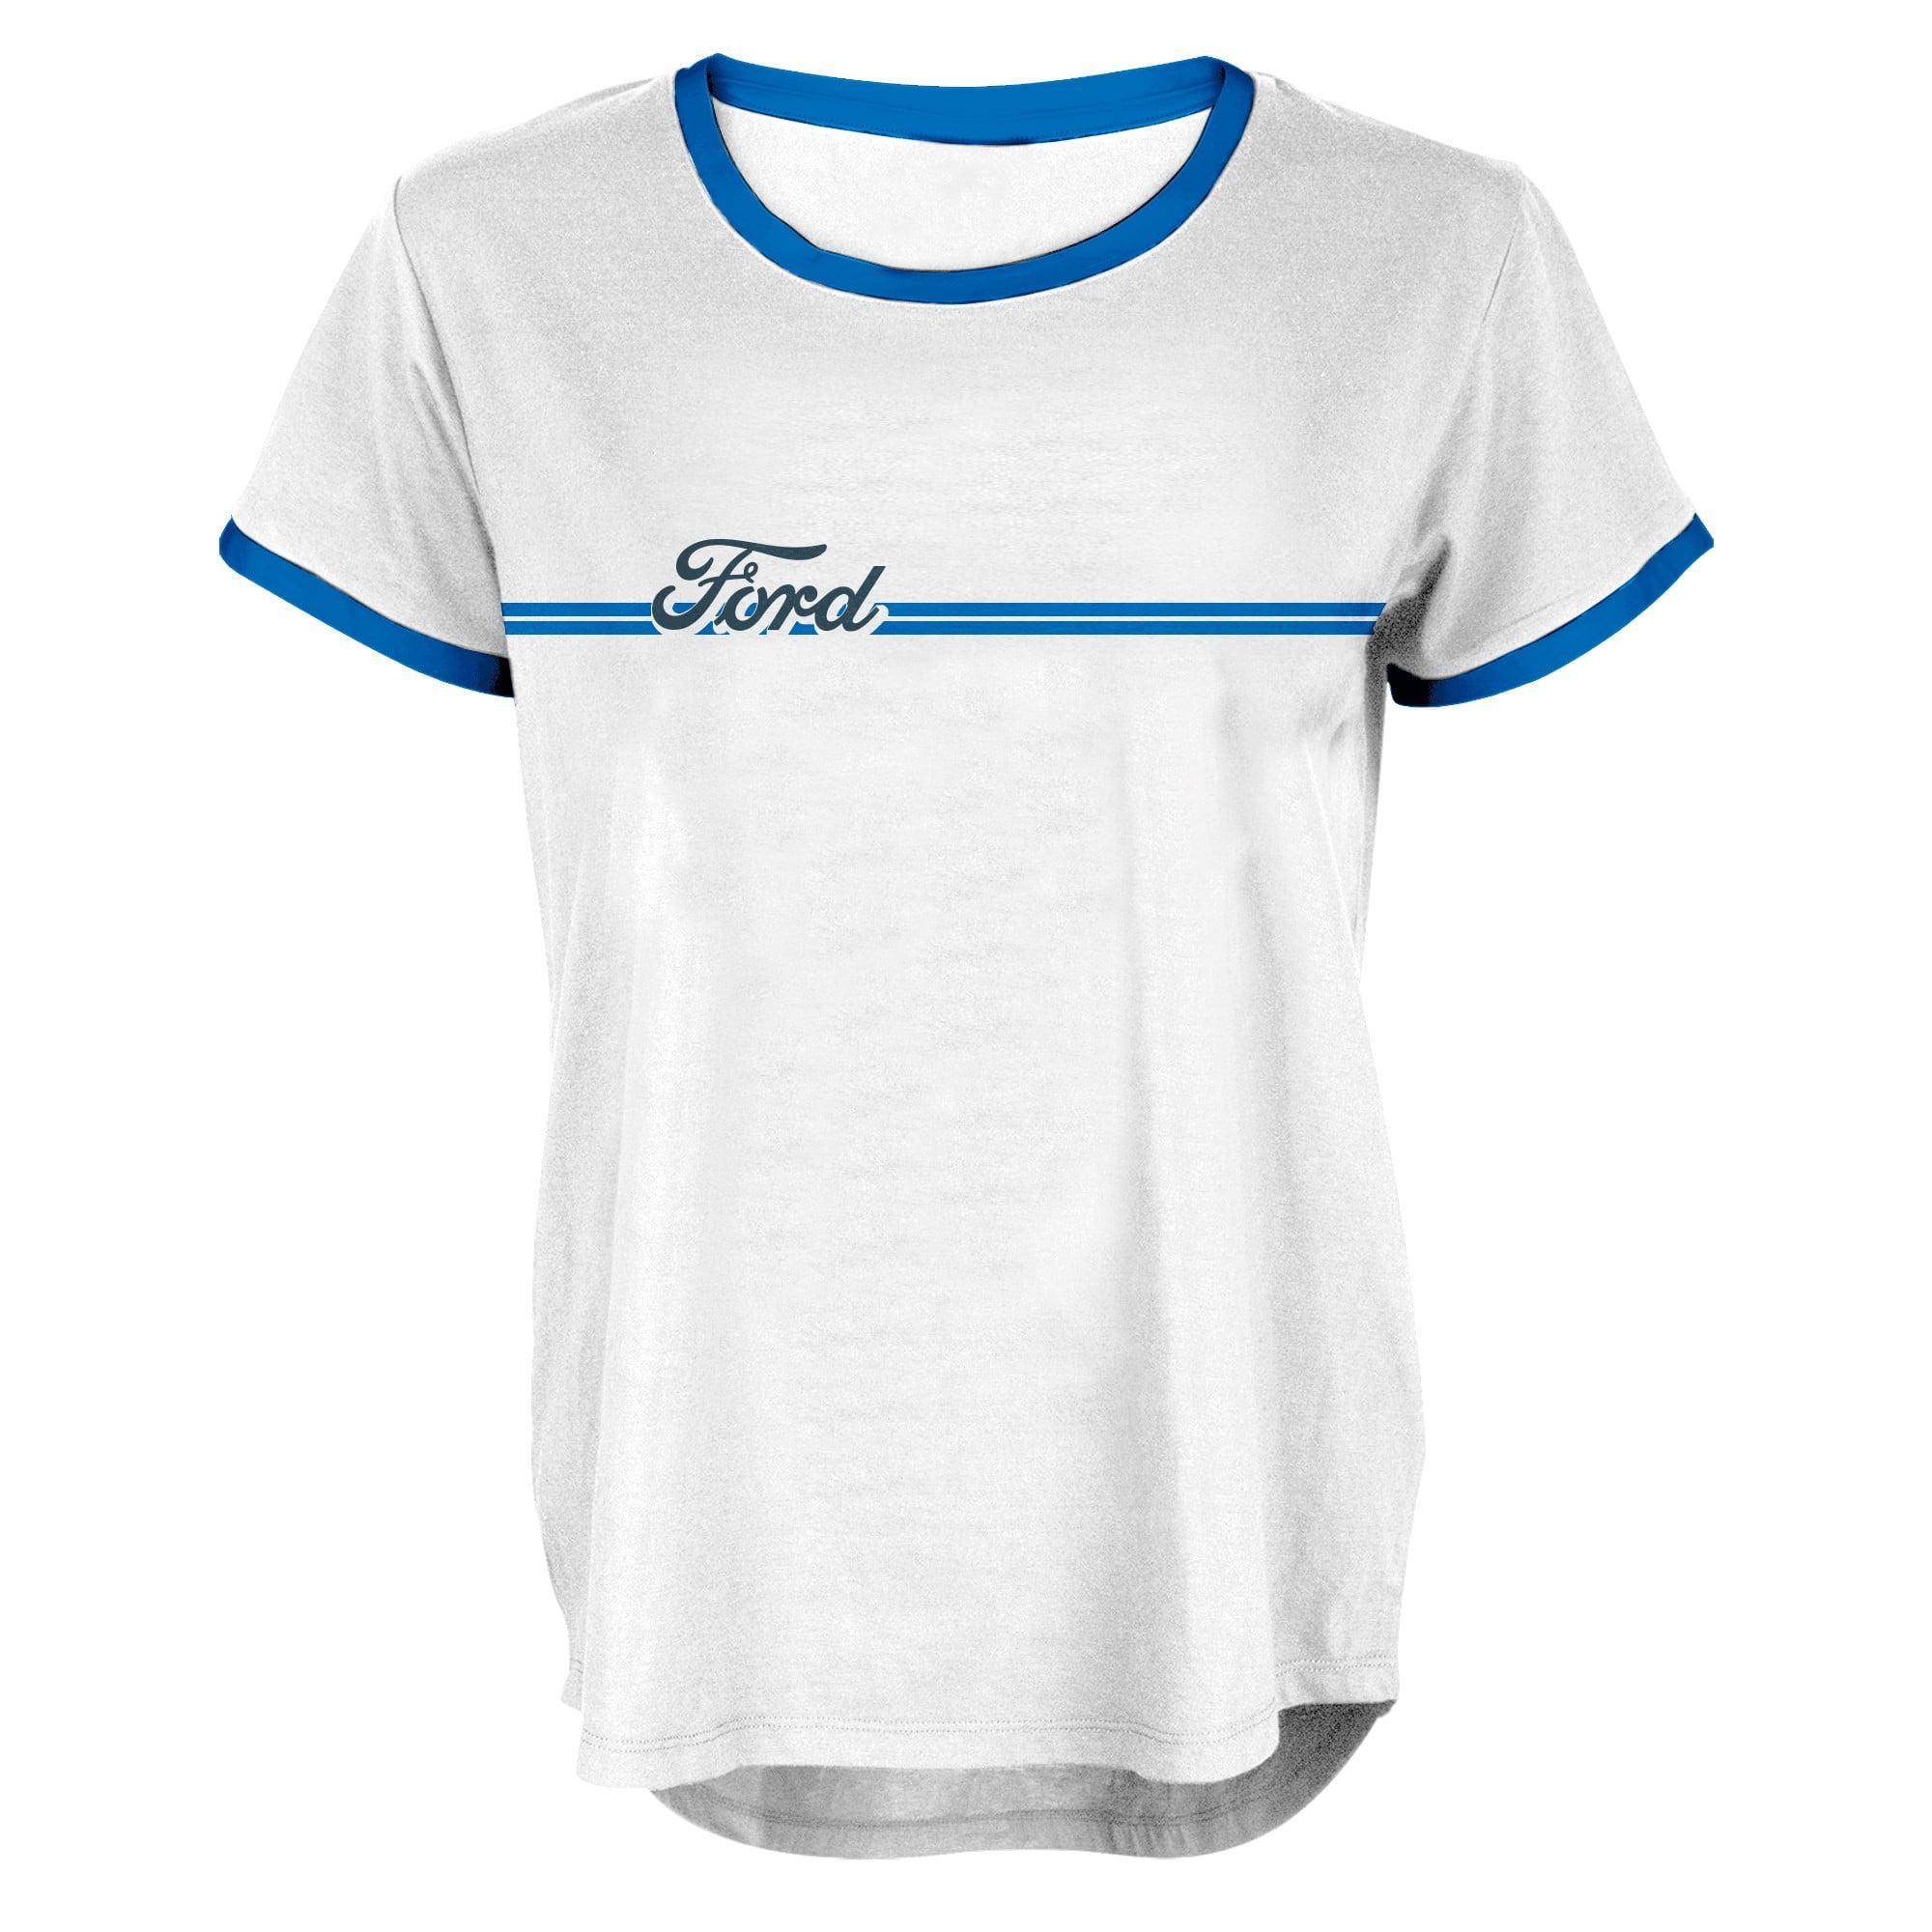 Ford Logo LADIES Ringer Top Shirt Tee T-Shirt